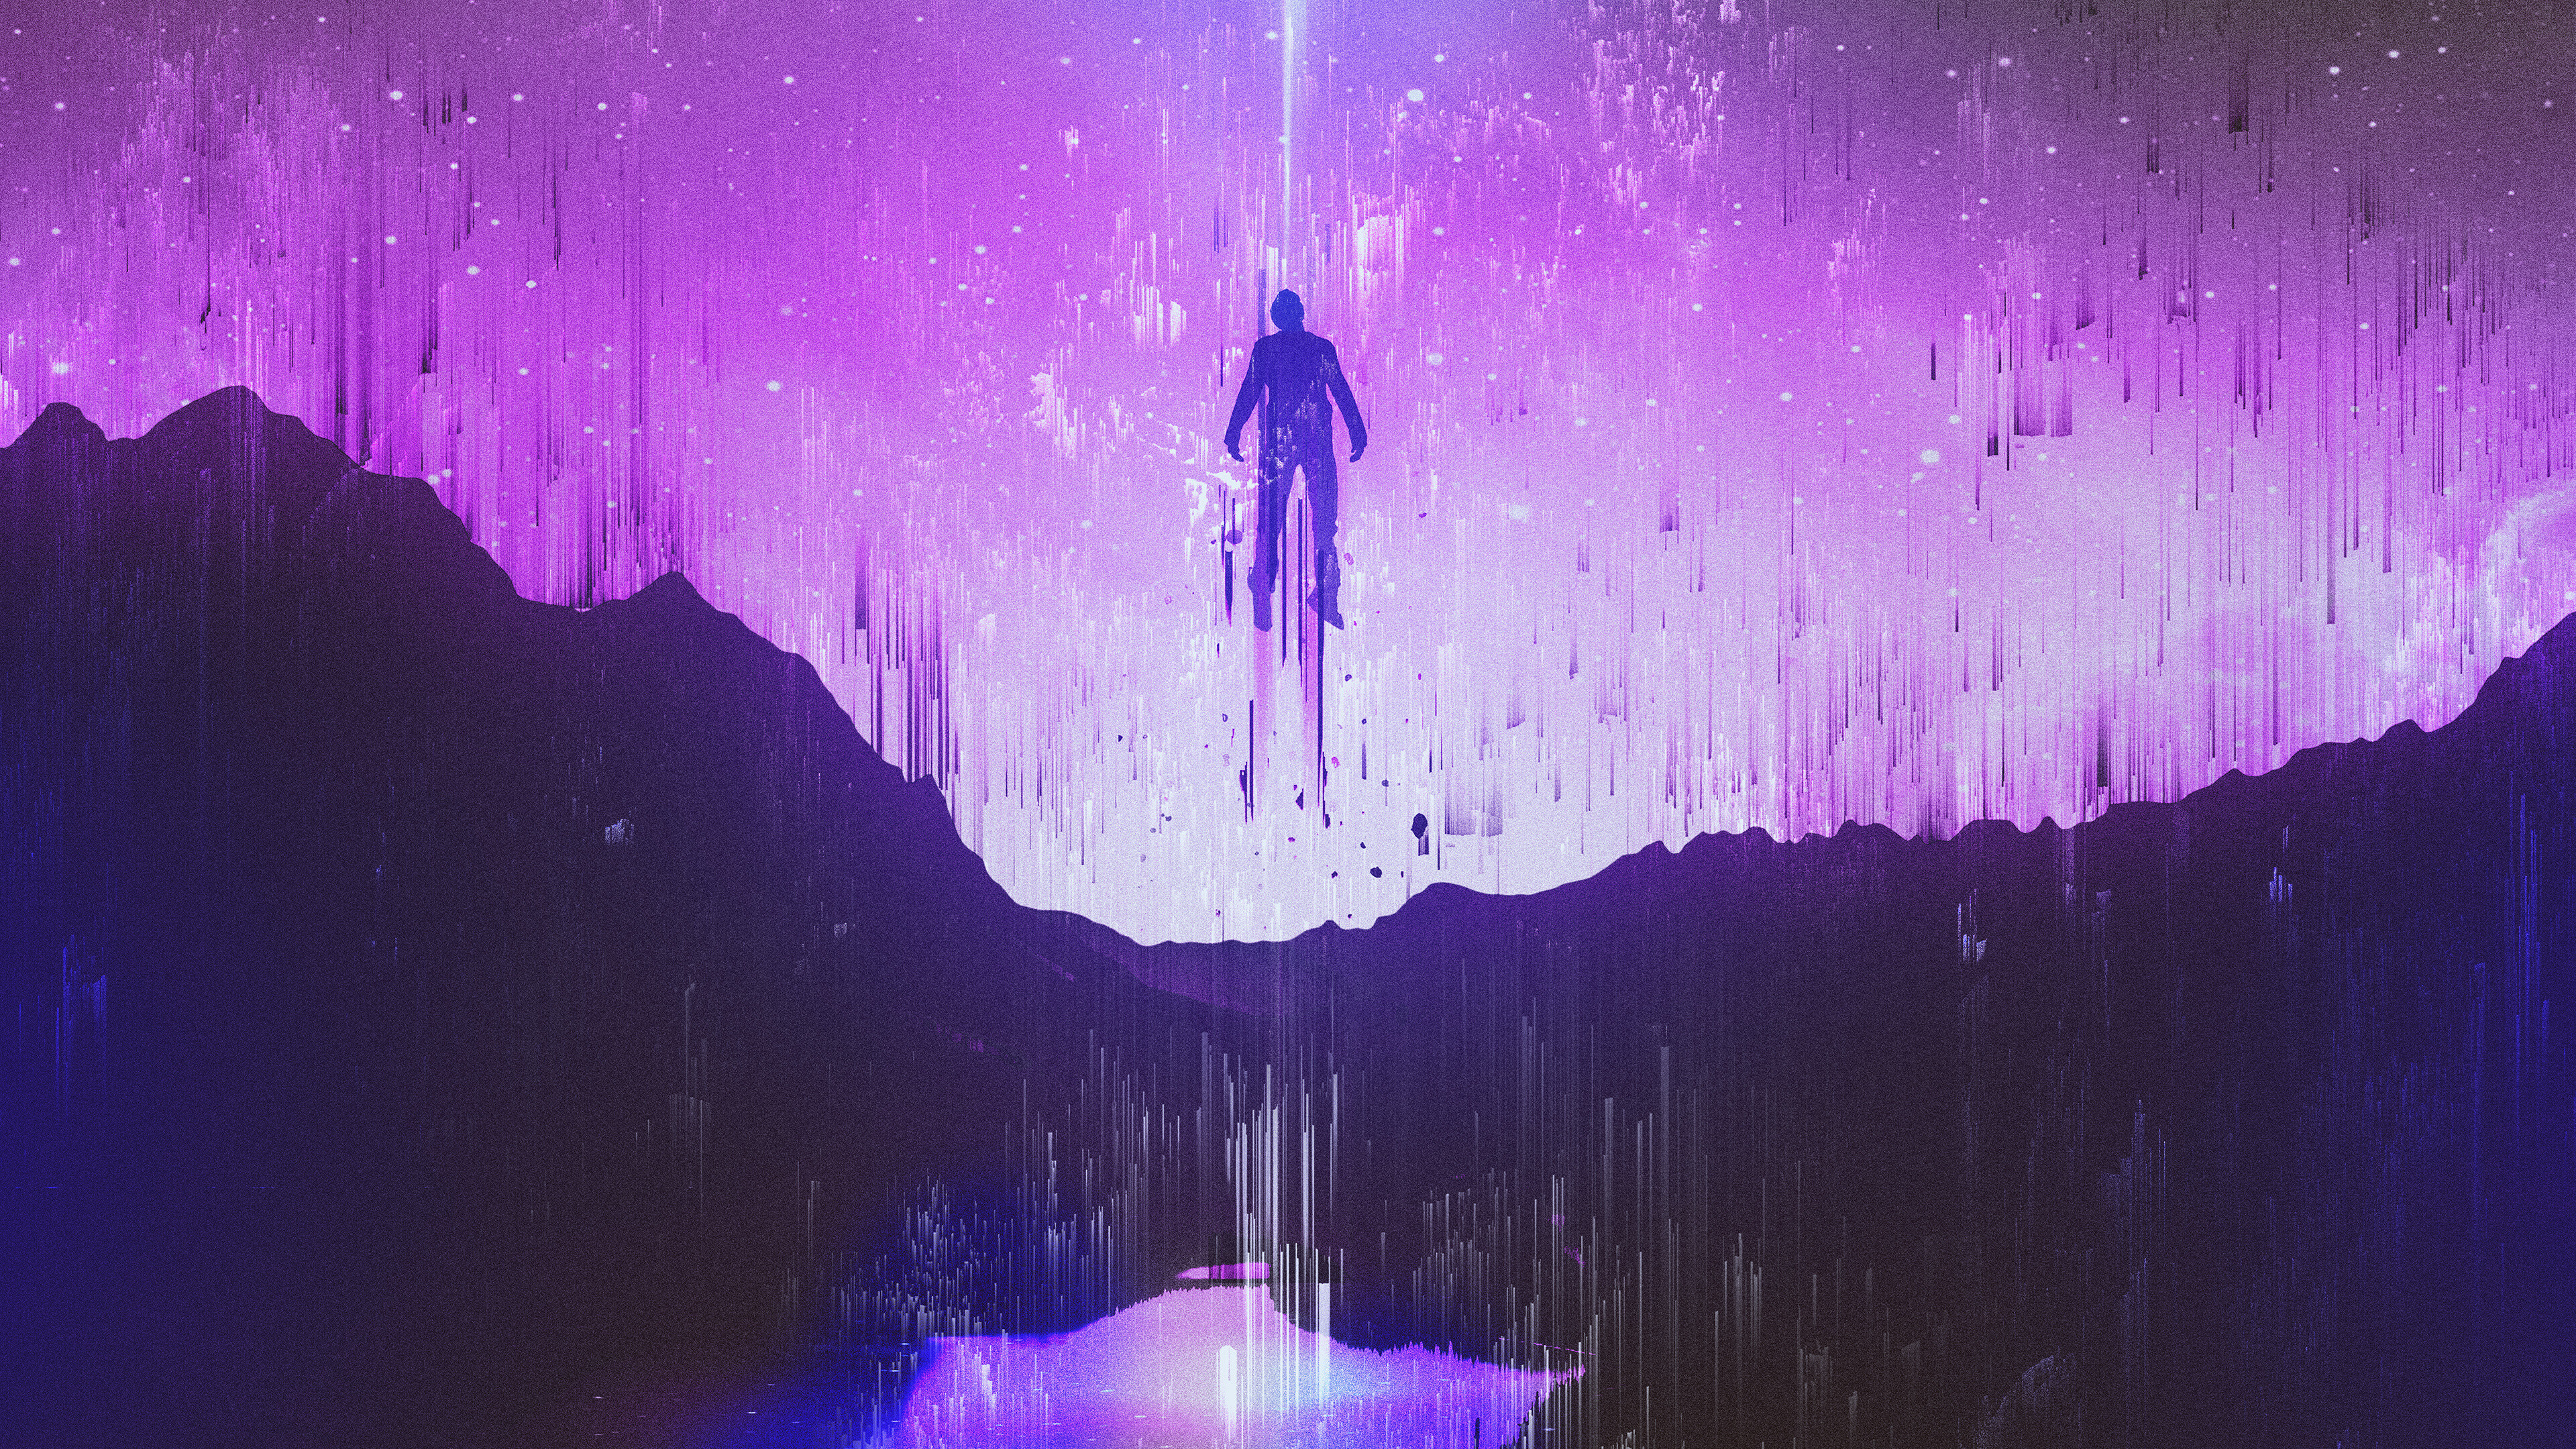 Purple sky dreams, Glitch art masterpiece, UHD wallpaper, Widescreen background, 3840x2160 4K Desktop